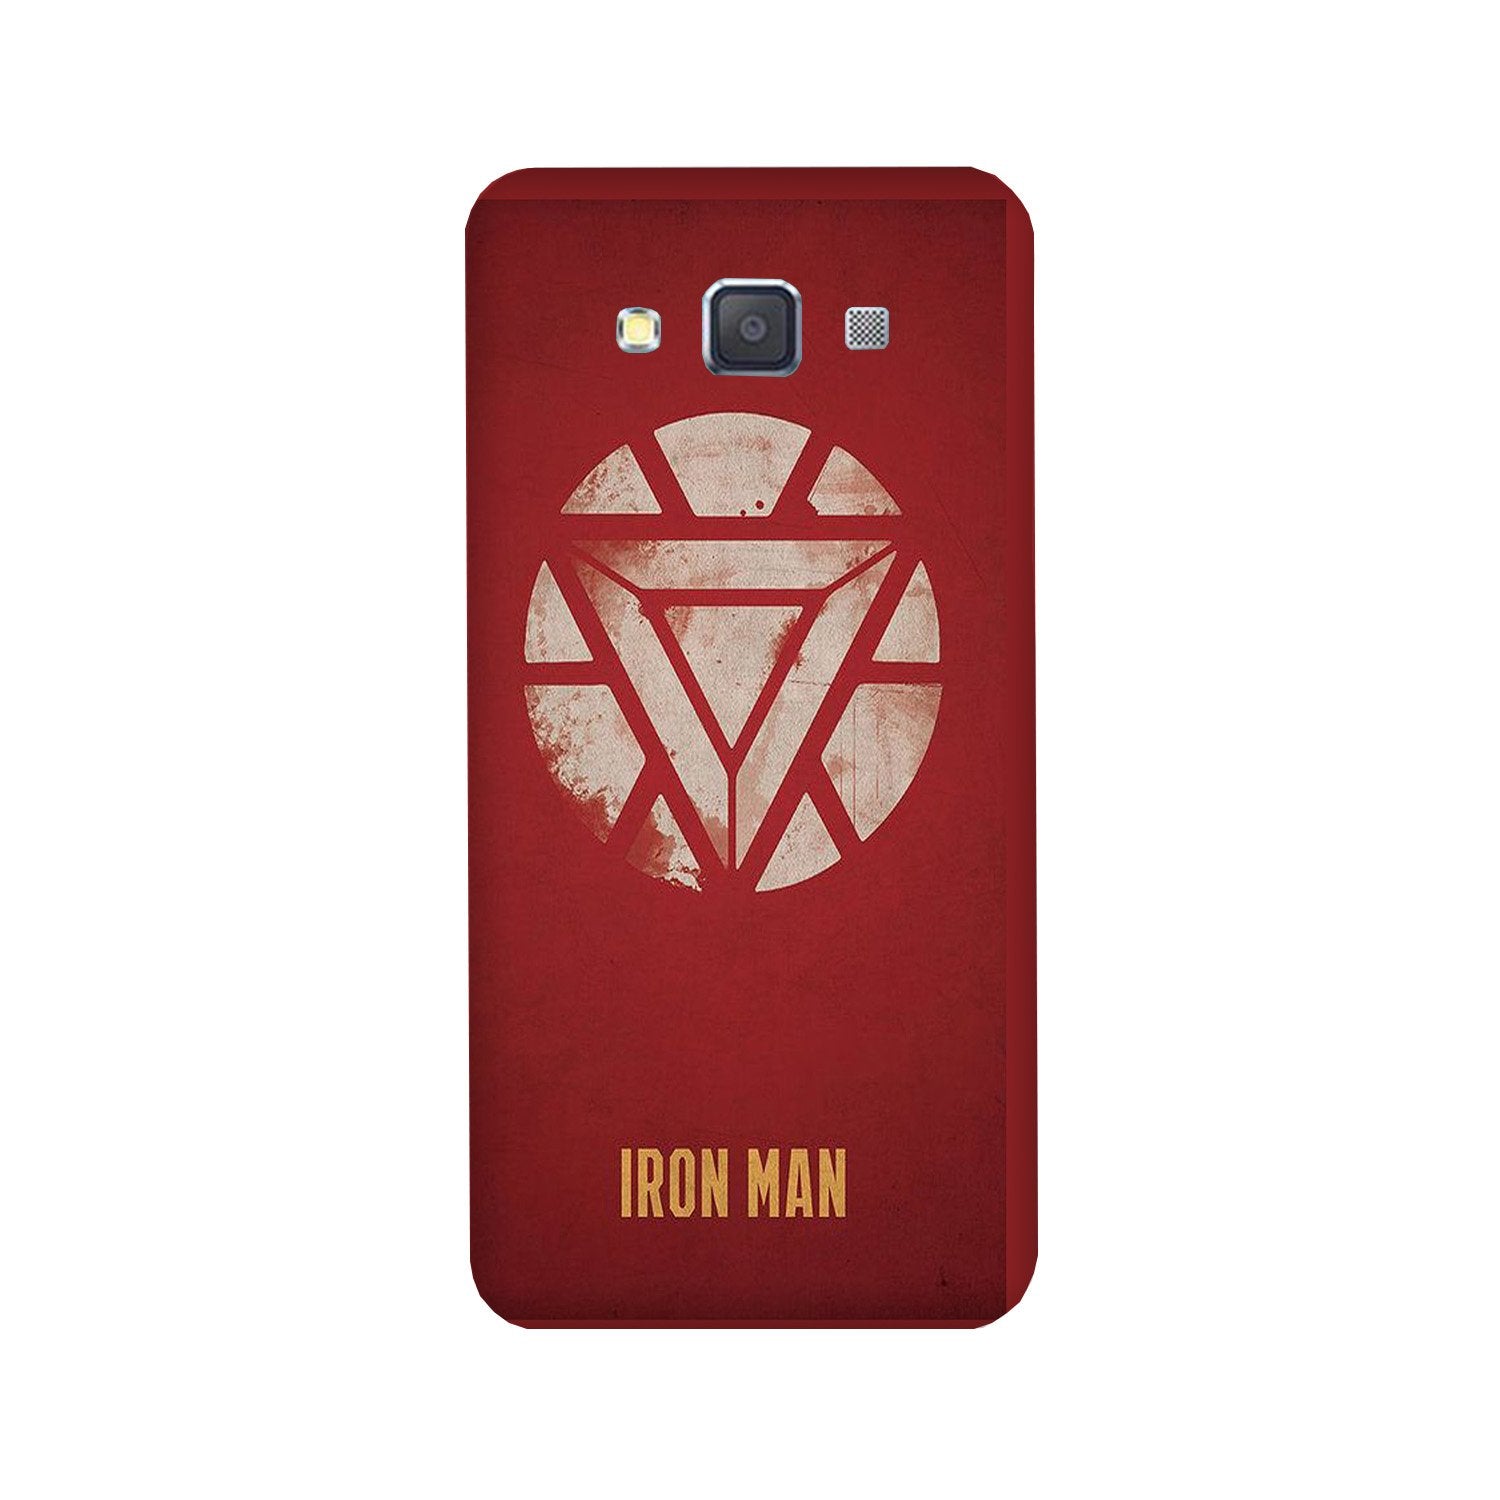 Iron Man Superhero Case for Galaxy E5(Design - 115)